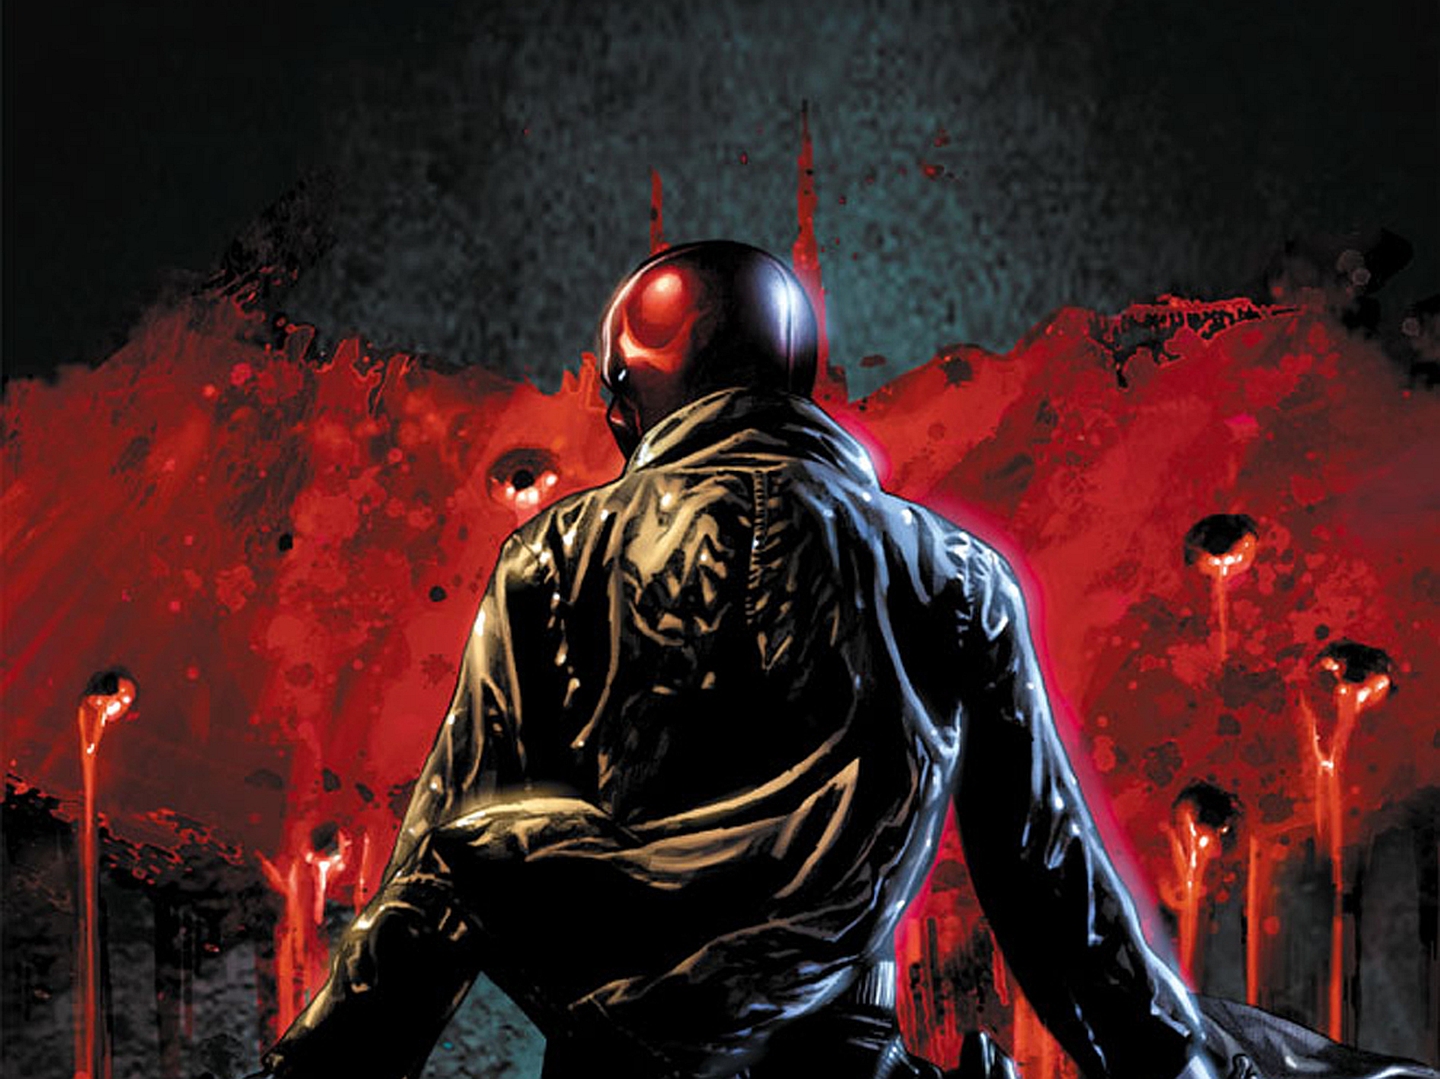 capucha roja fondo de pantalla hd,superhéroe,personaje de ficción,hombre murciélago,demonio,cg artwork